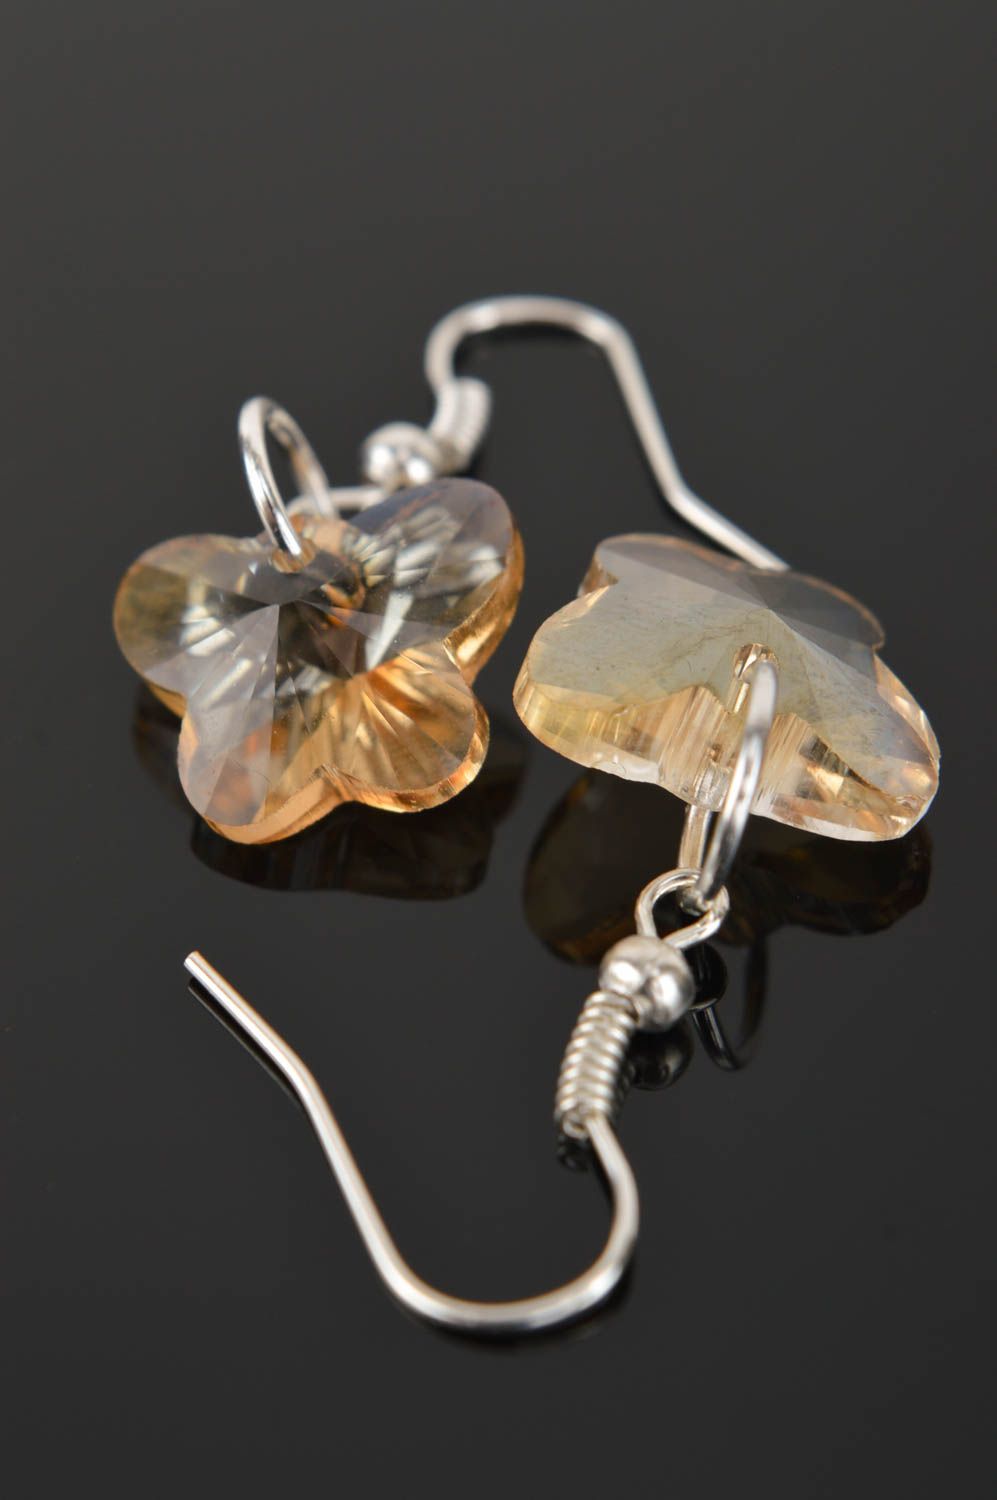 Handmade earrings unusual jewelry designer accessory glass earrings gift ideas photo 1